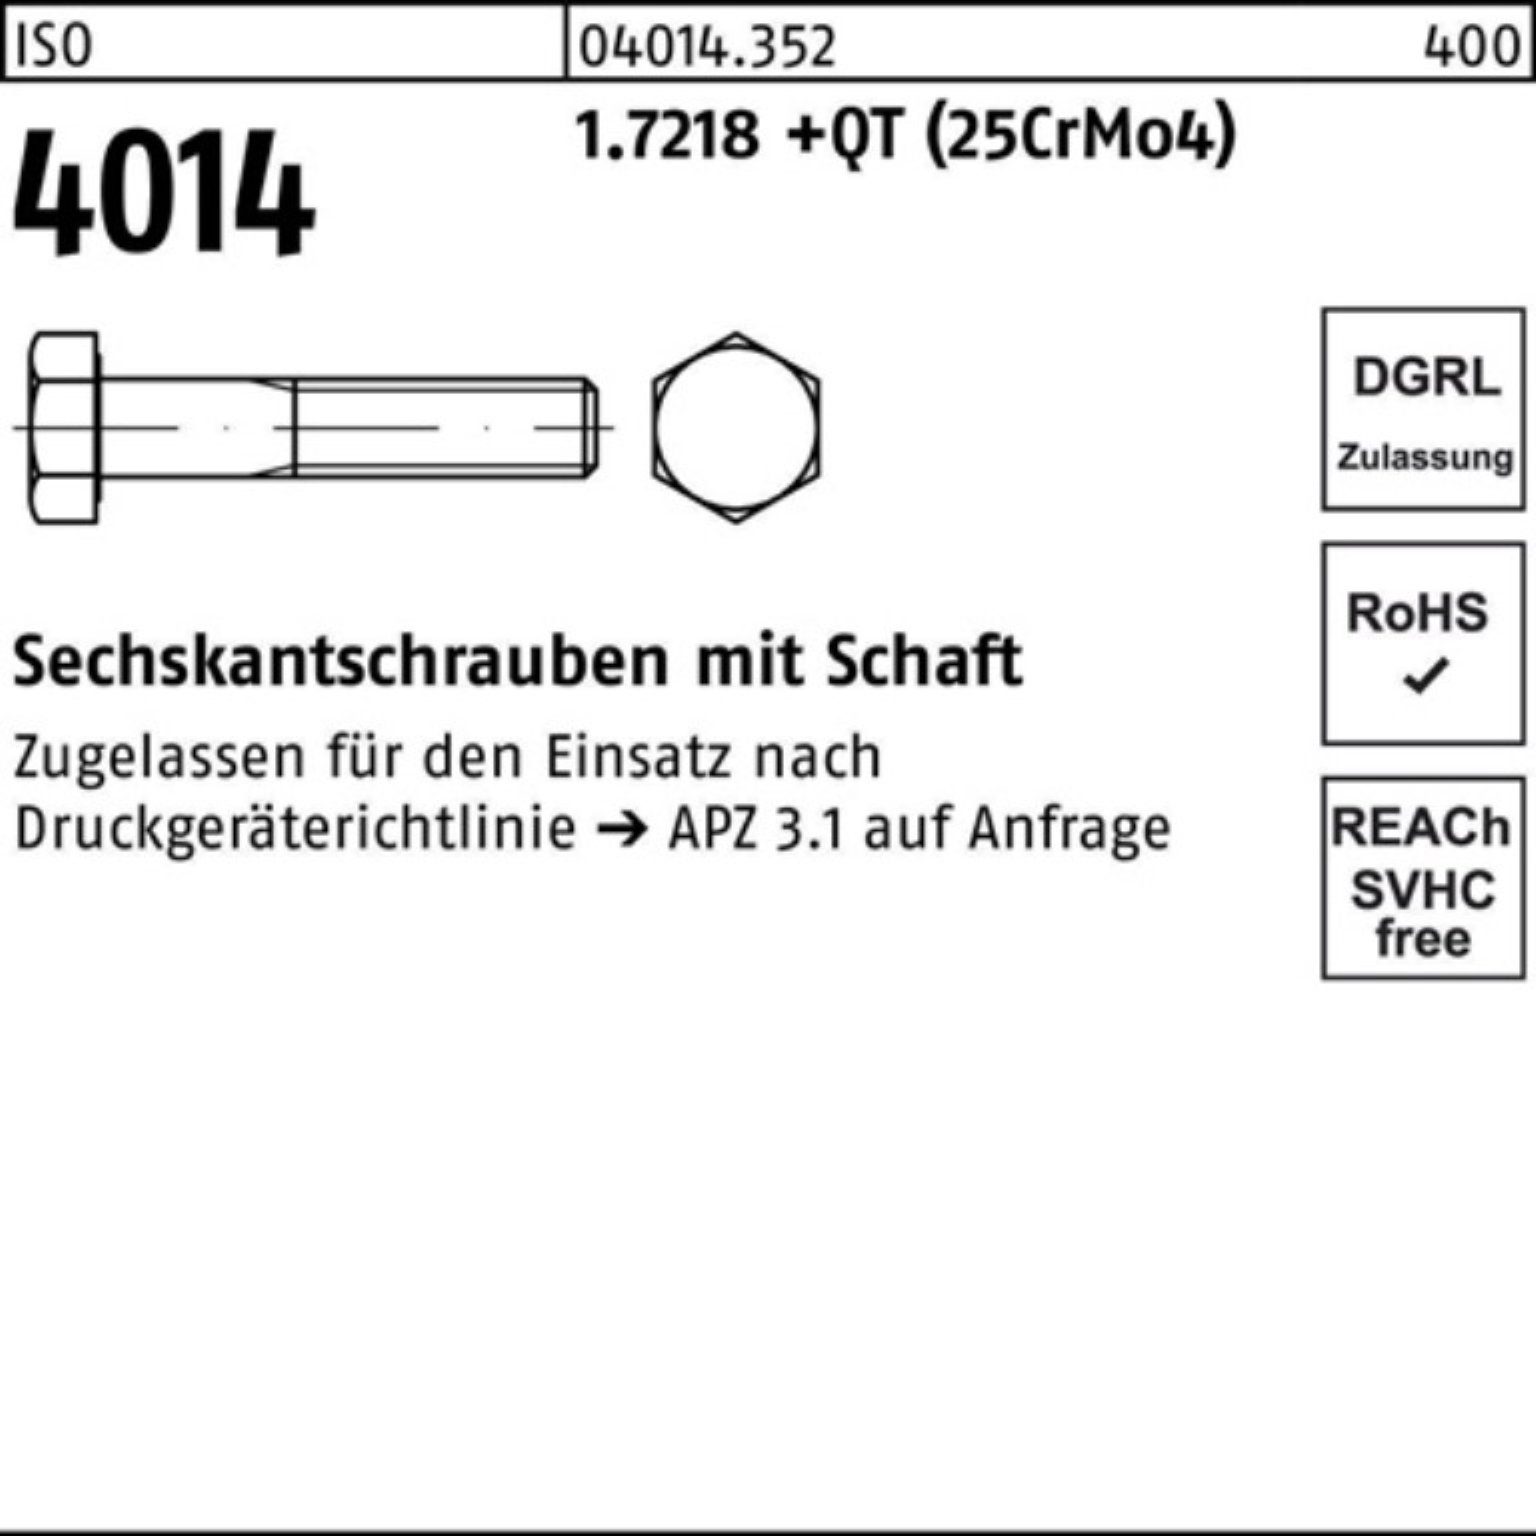 M36x Bufab 100er Pack (25Cr Sechskantschraube 1.7218 170 4014 Sechskantschraube Schaft ISO +QT